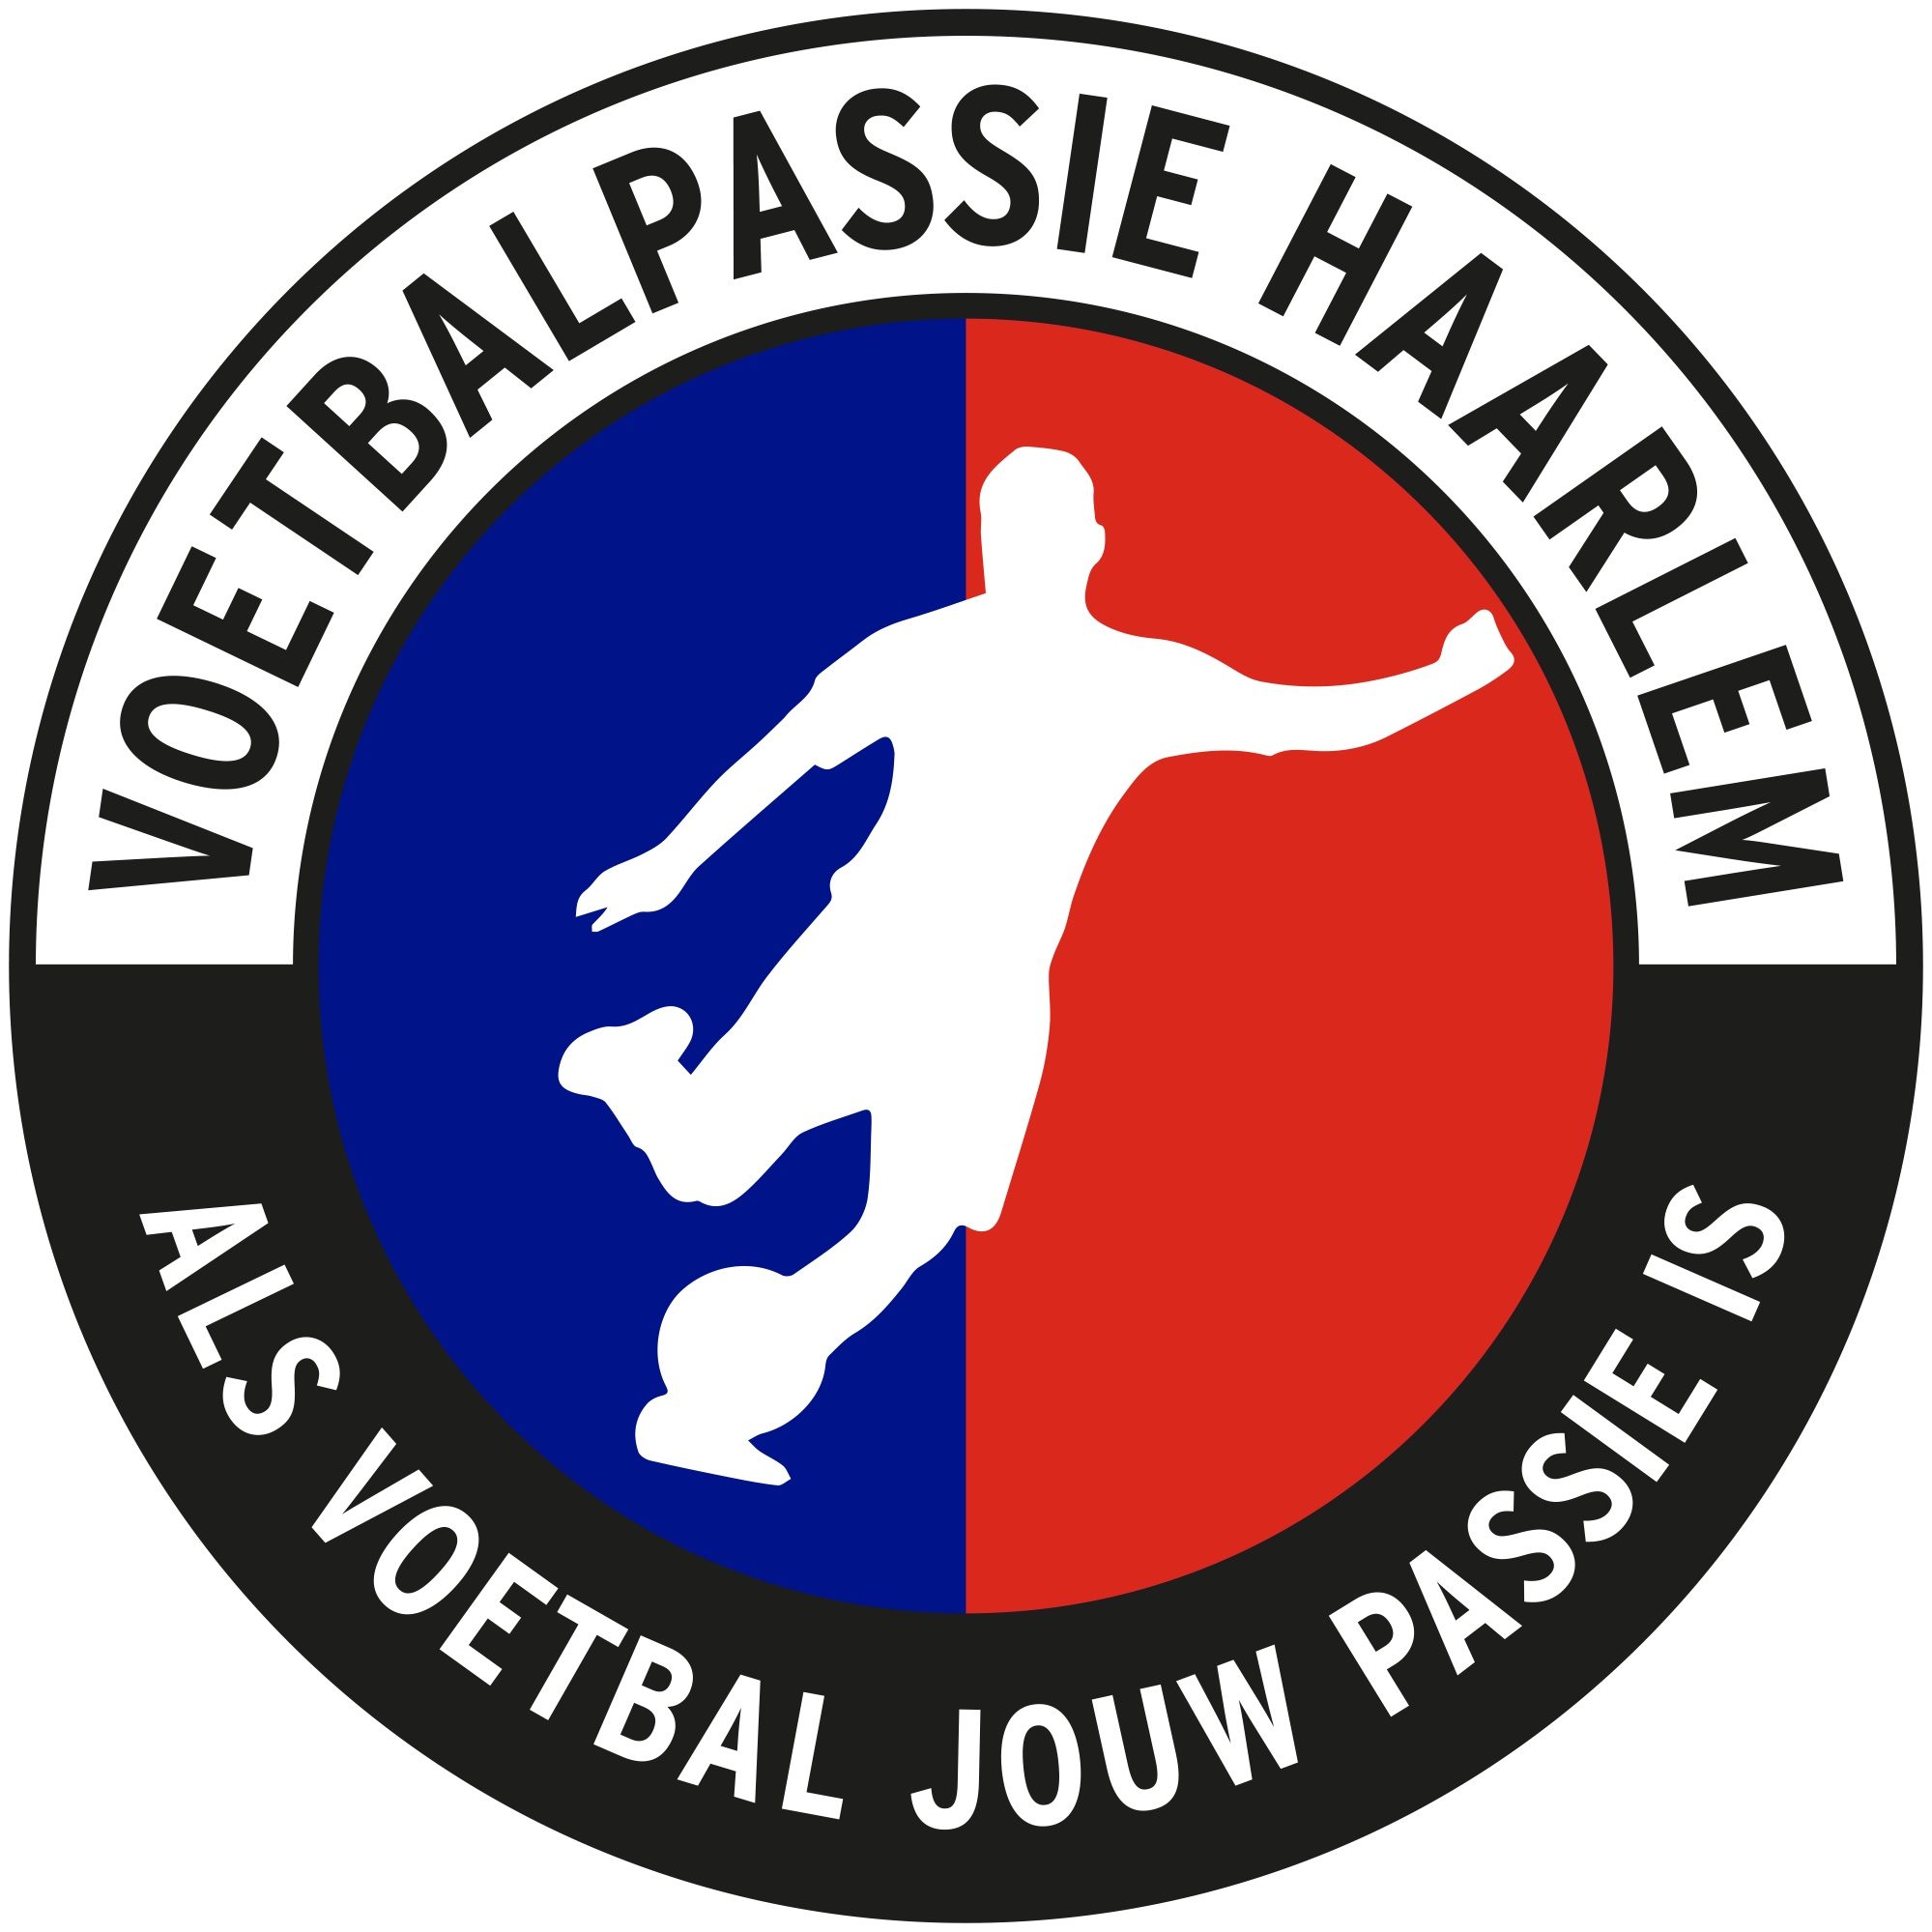 Voetbalpassie Haarlem